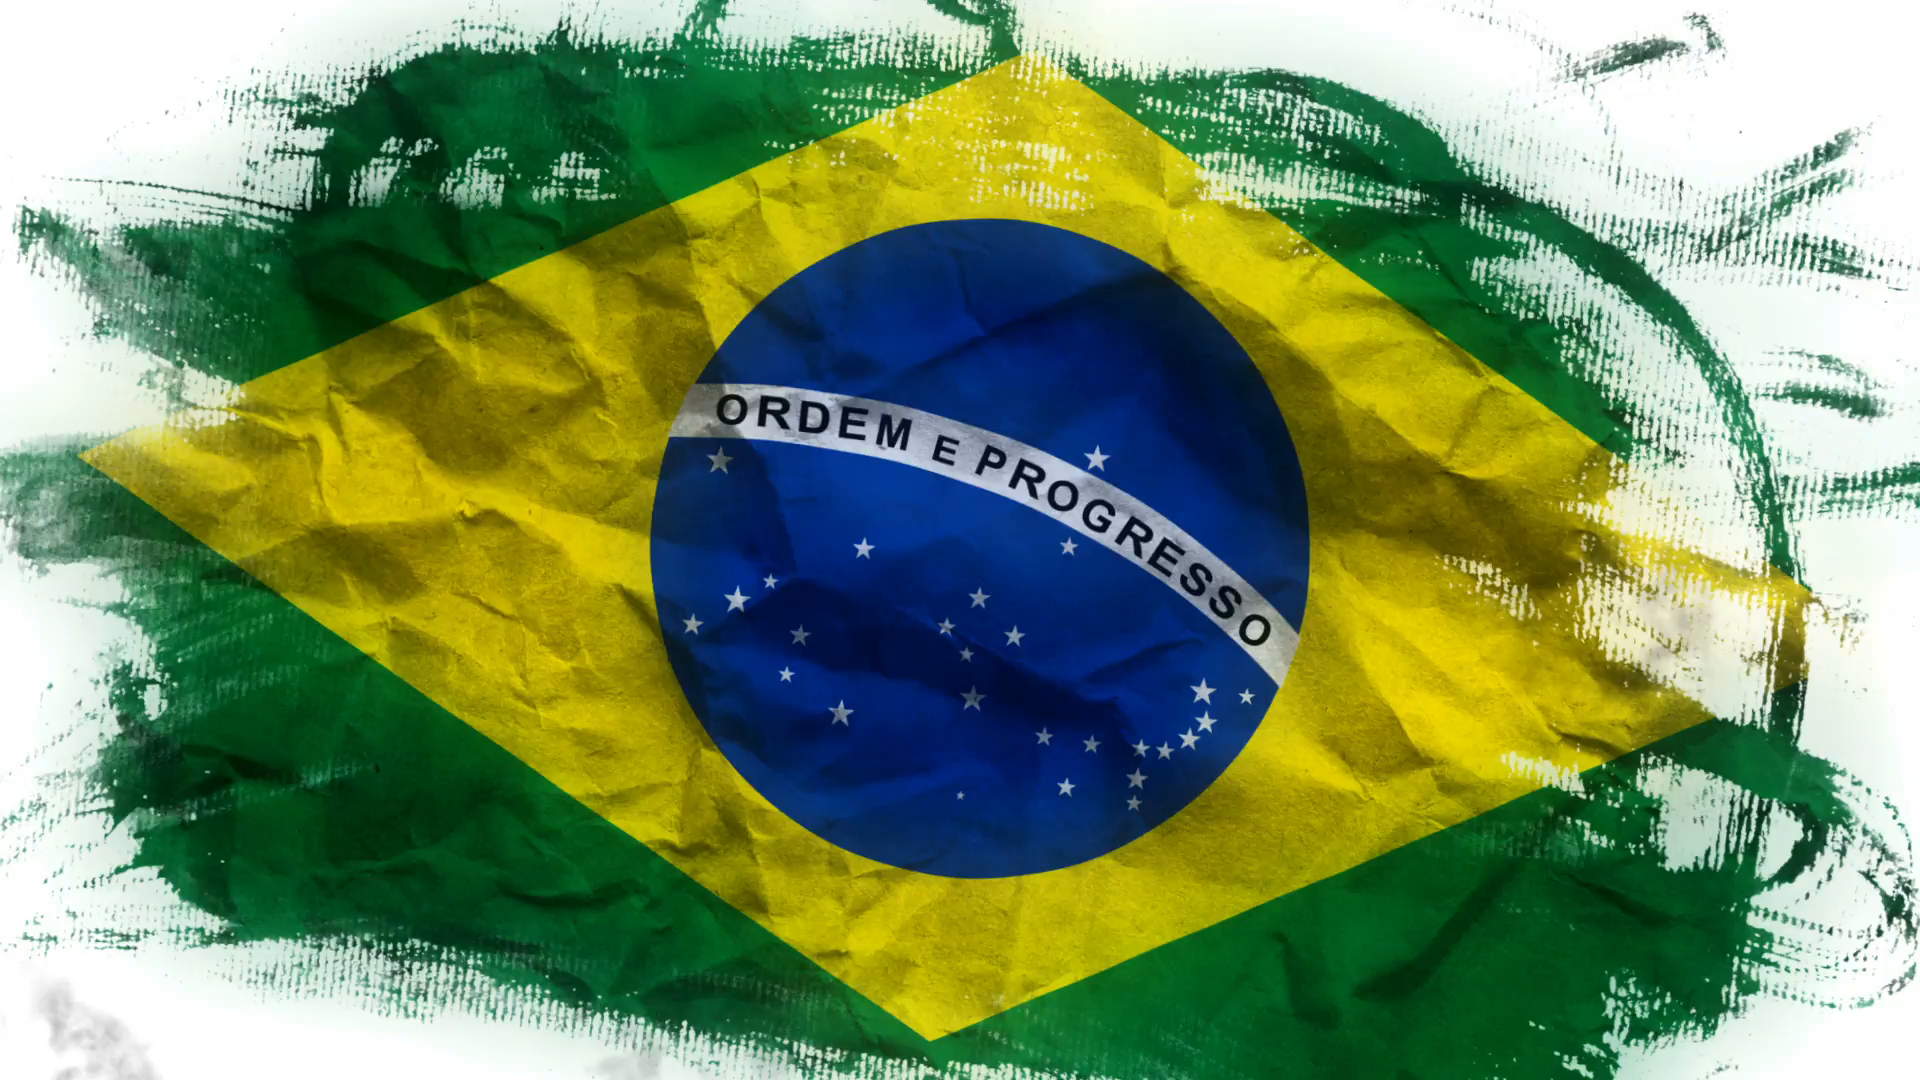 Brazil Flag PNG Image in Transparent pngteam.com